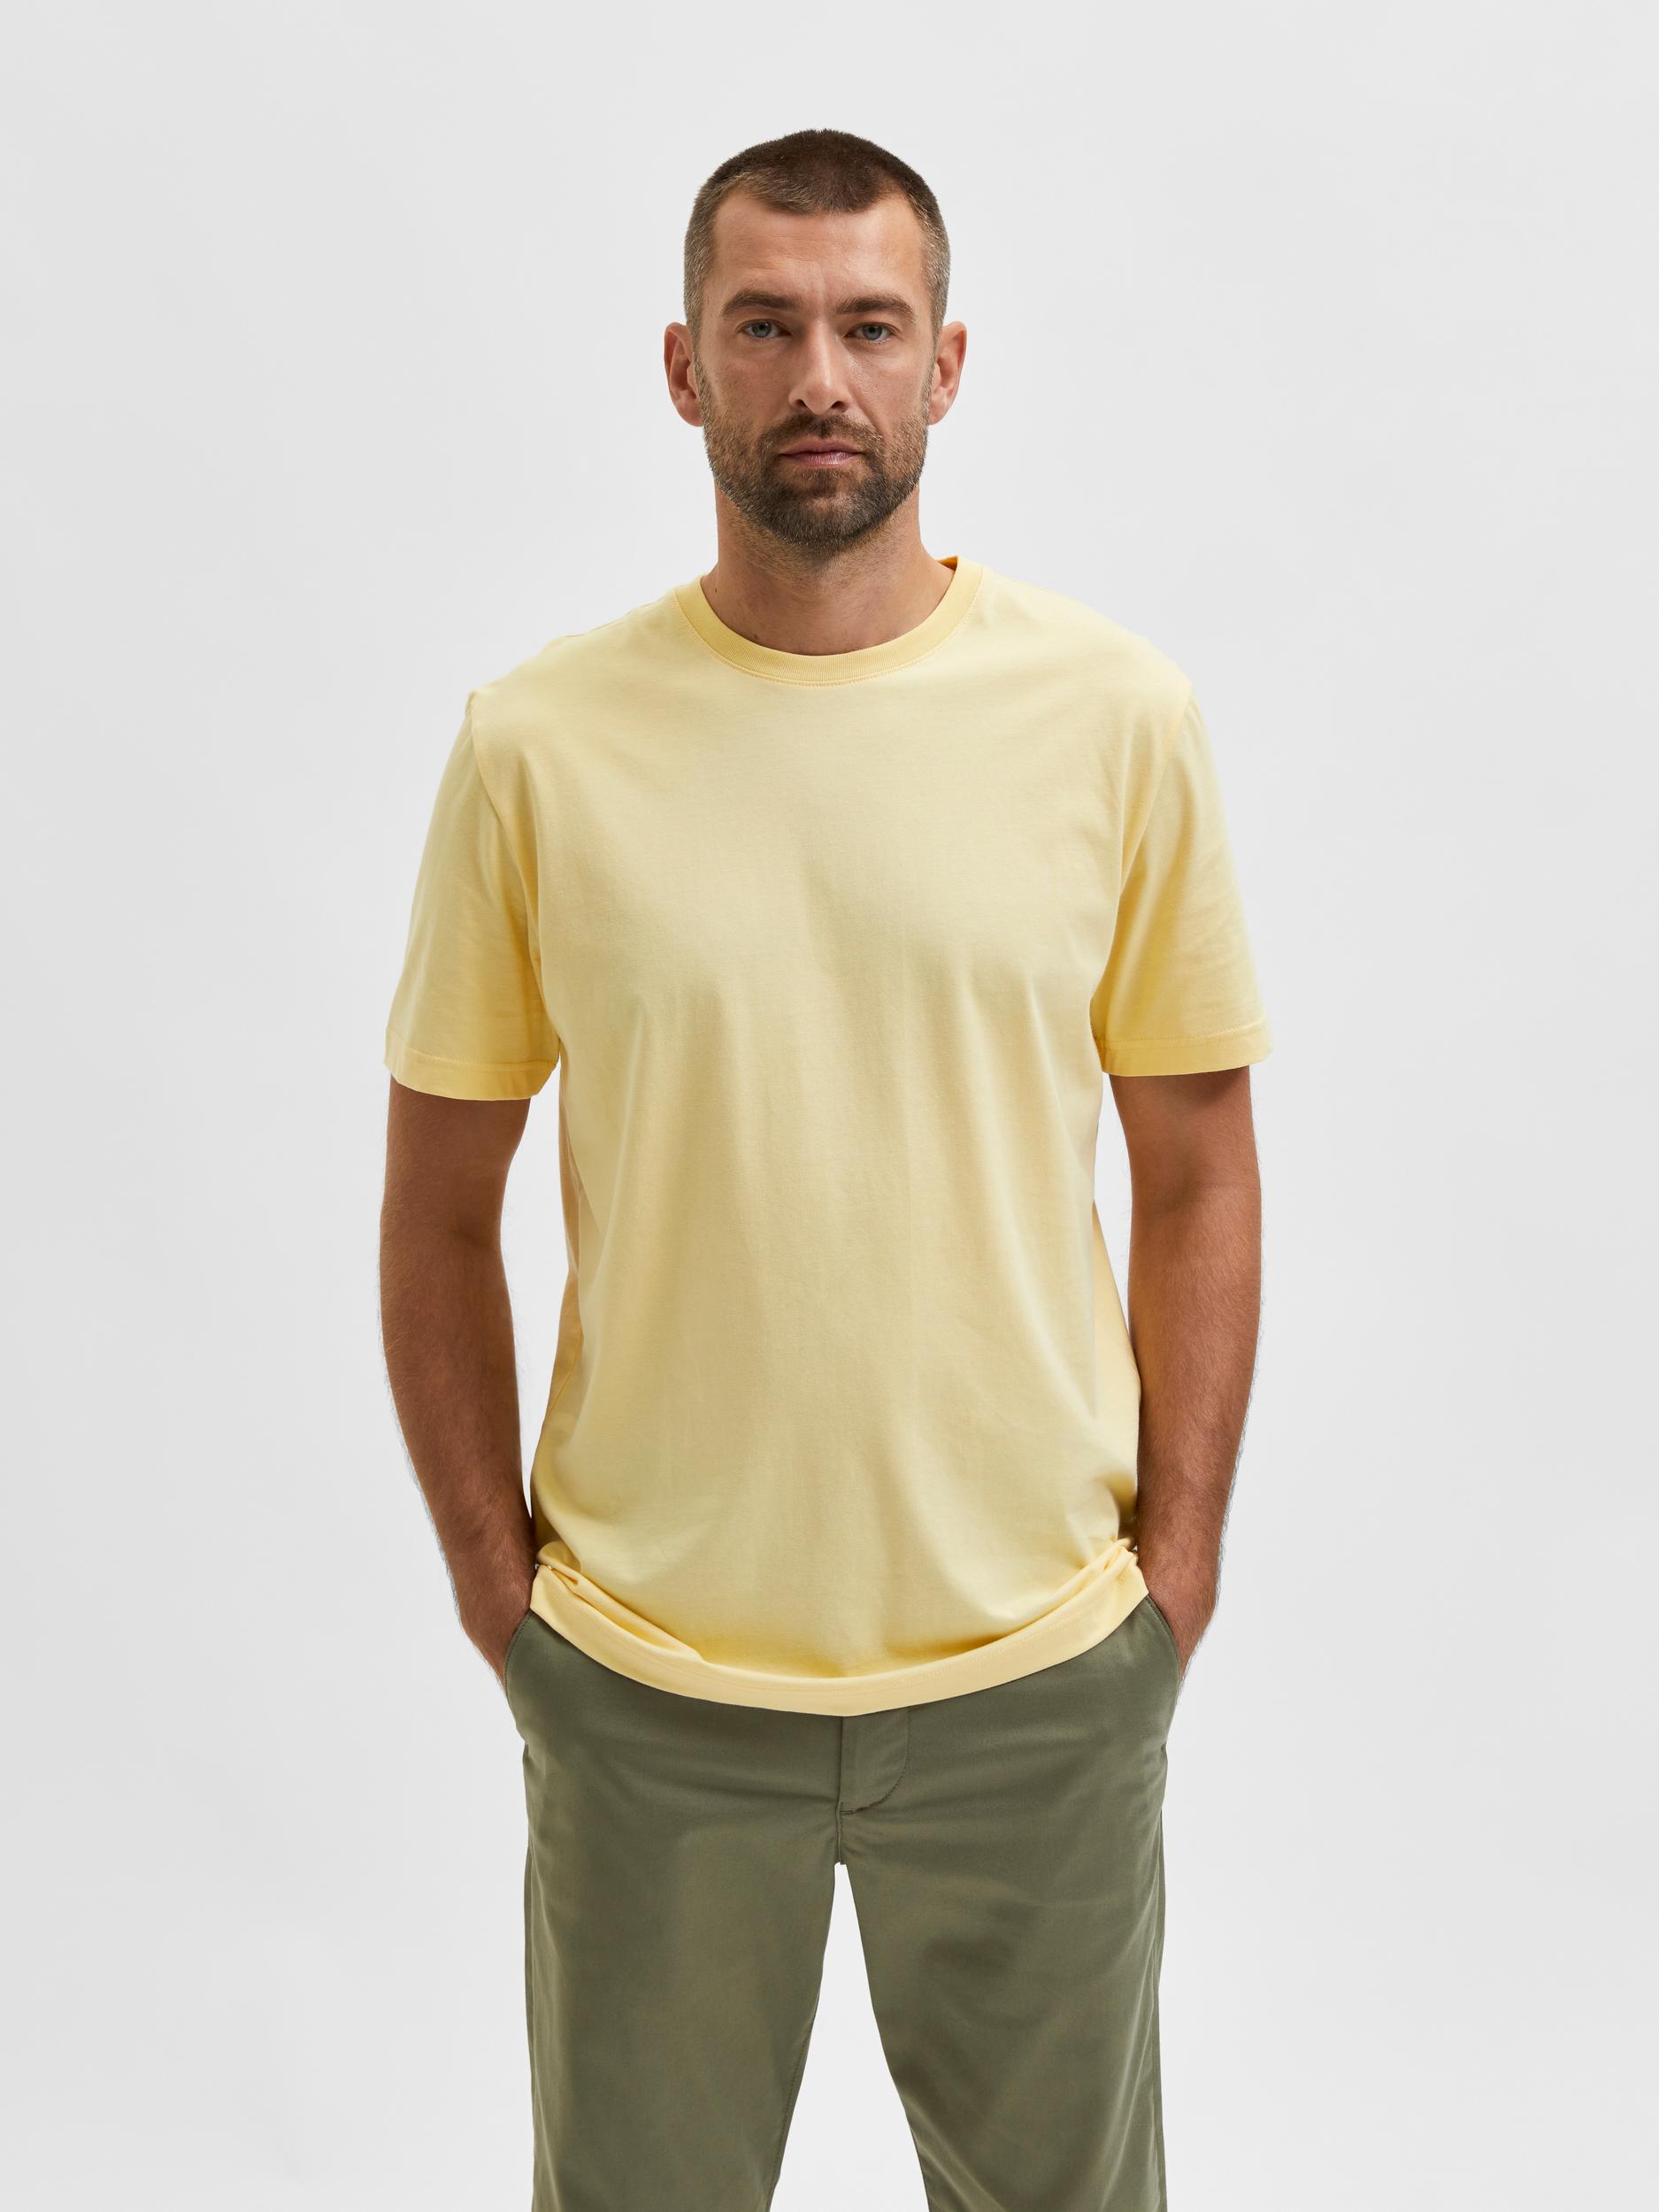  Norman T-shirt, Sunlight, M